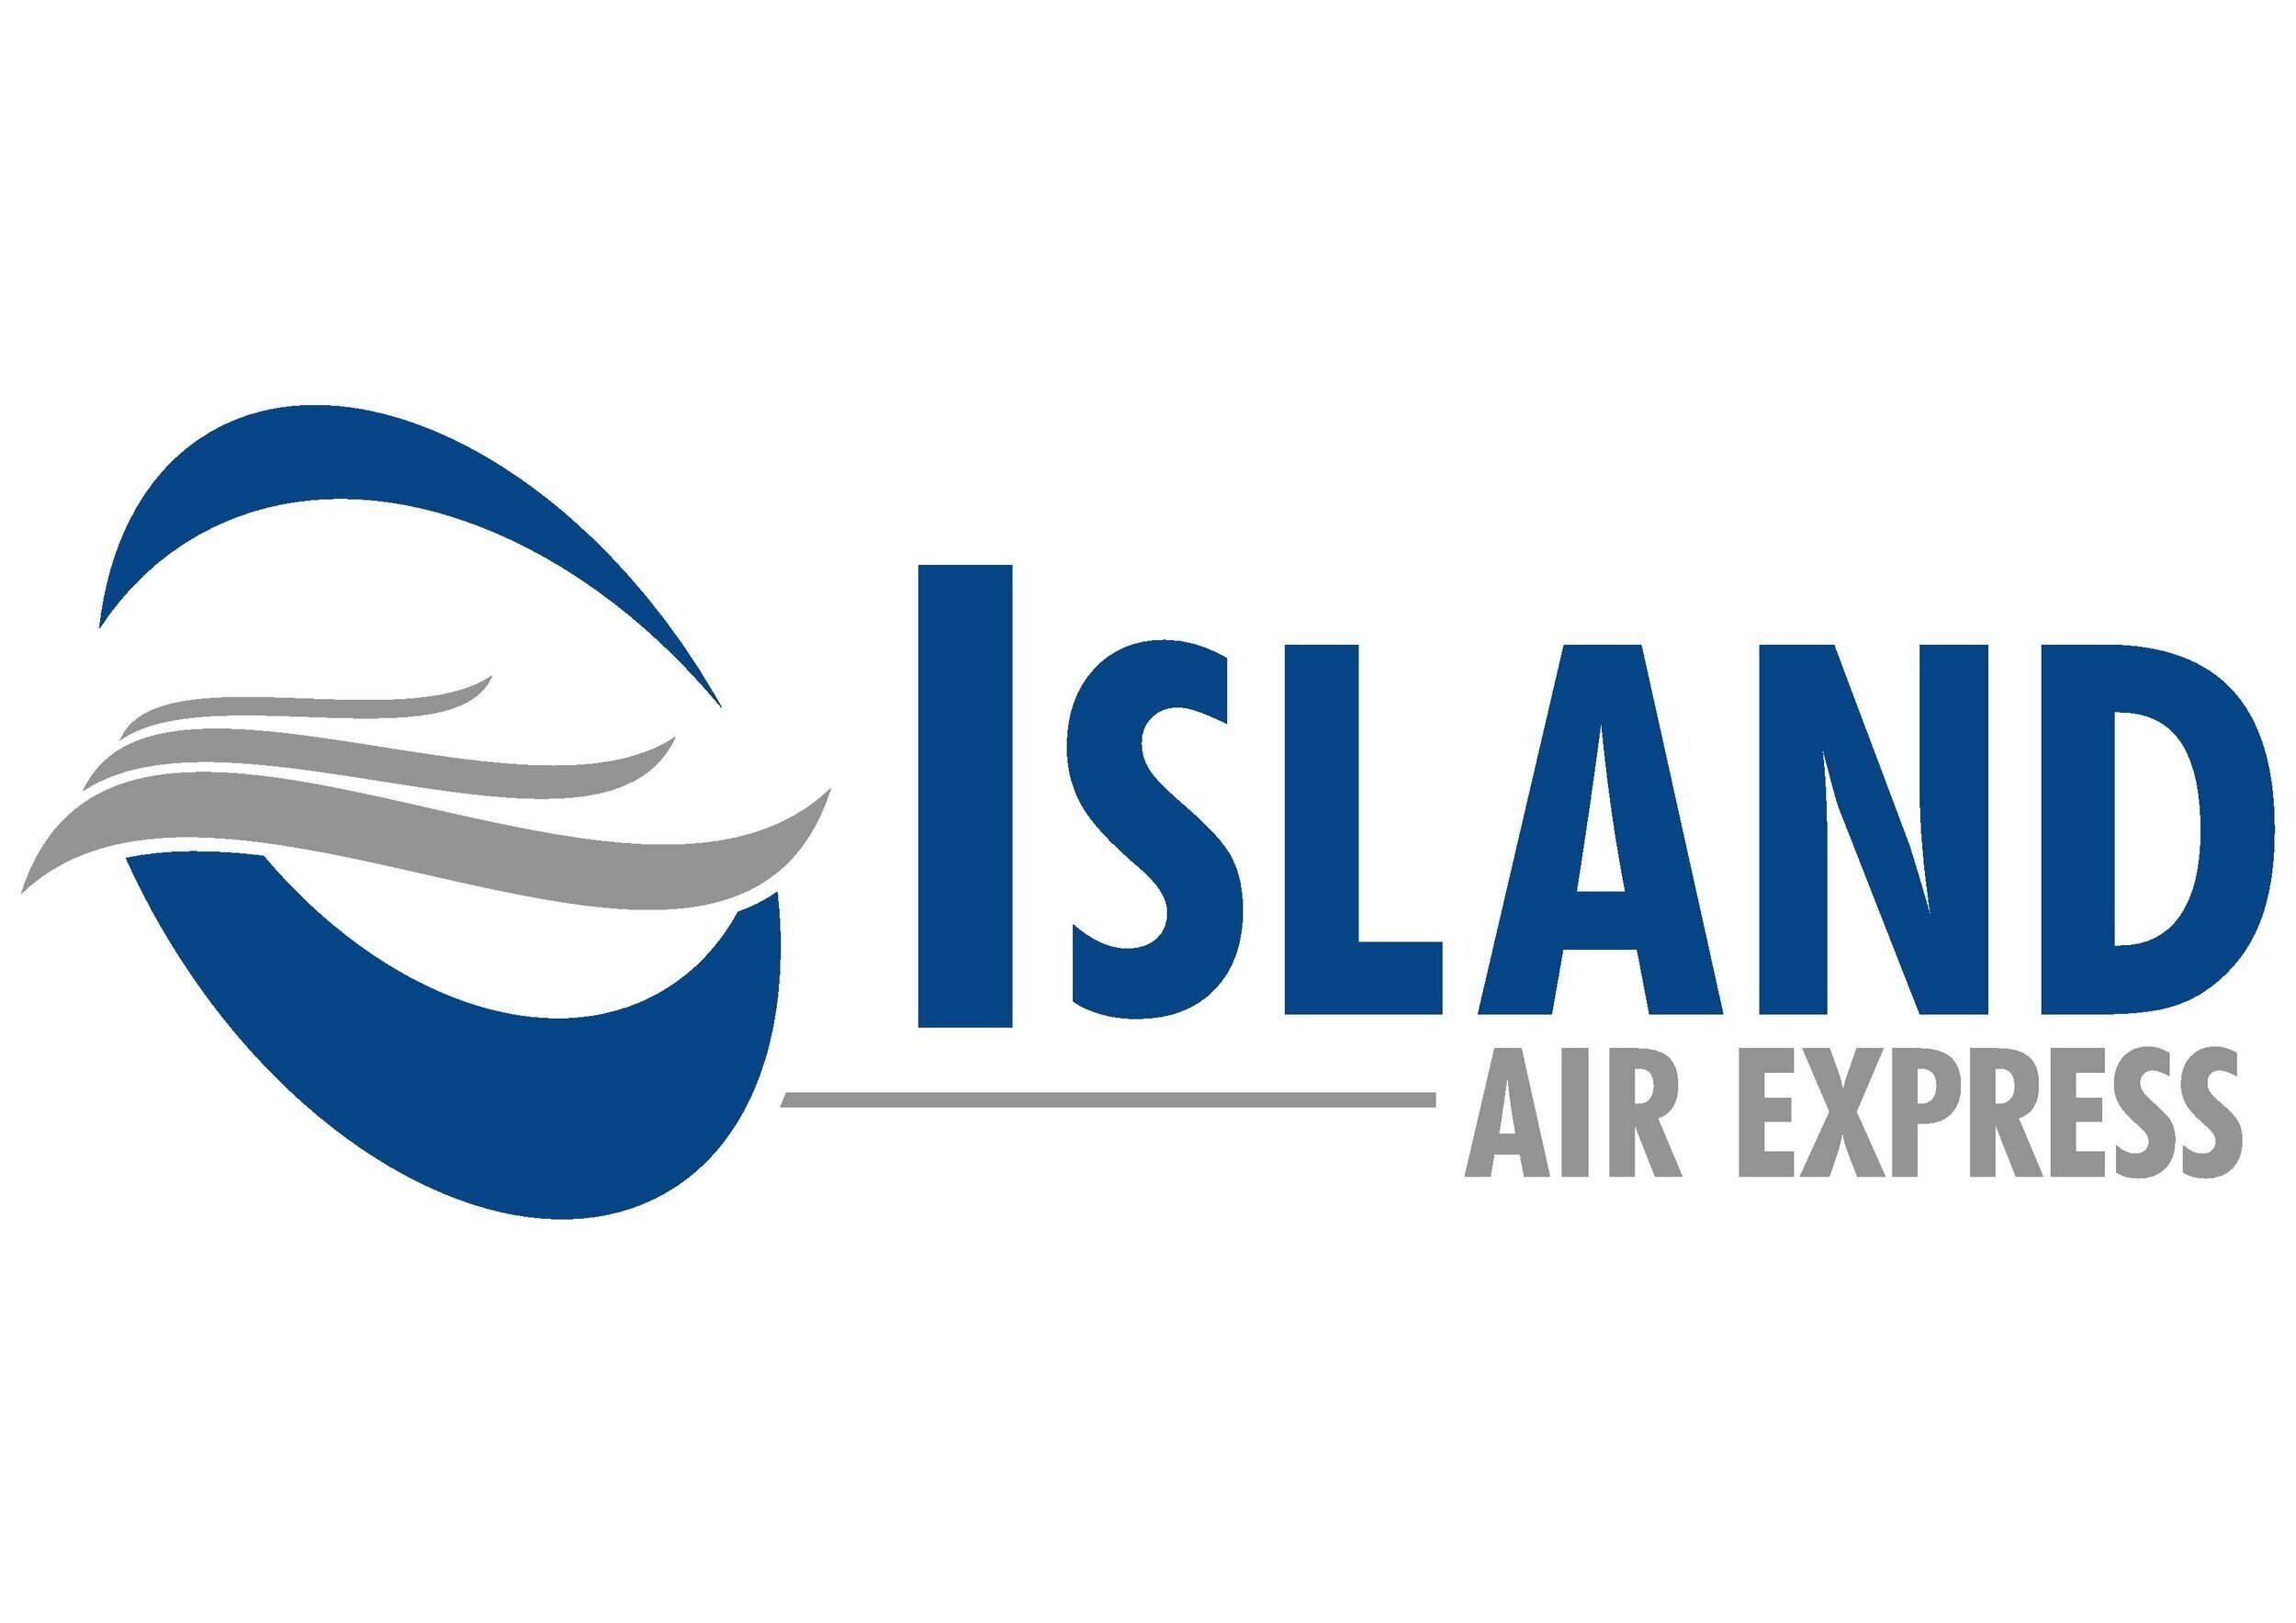 Island Air Express